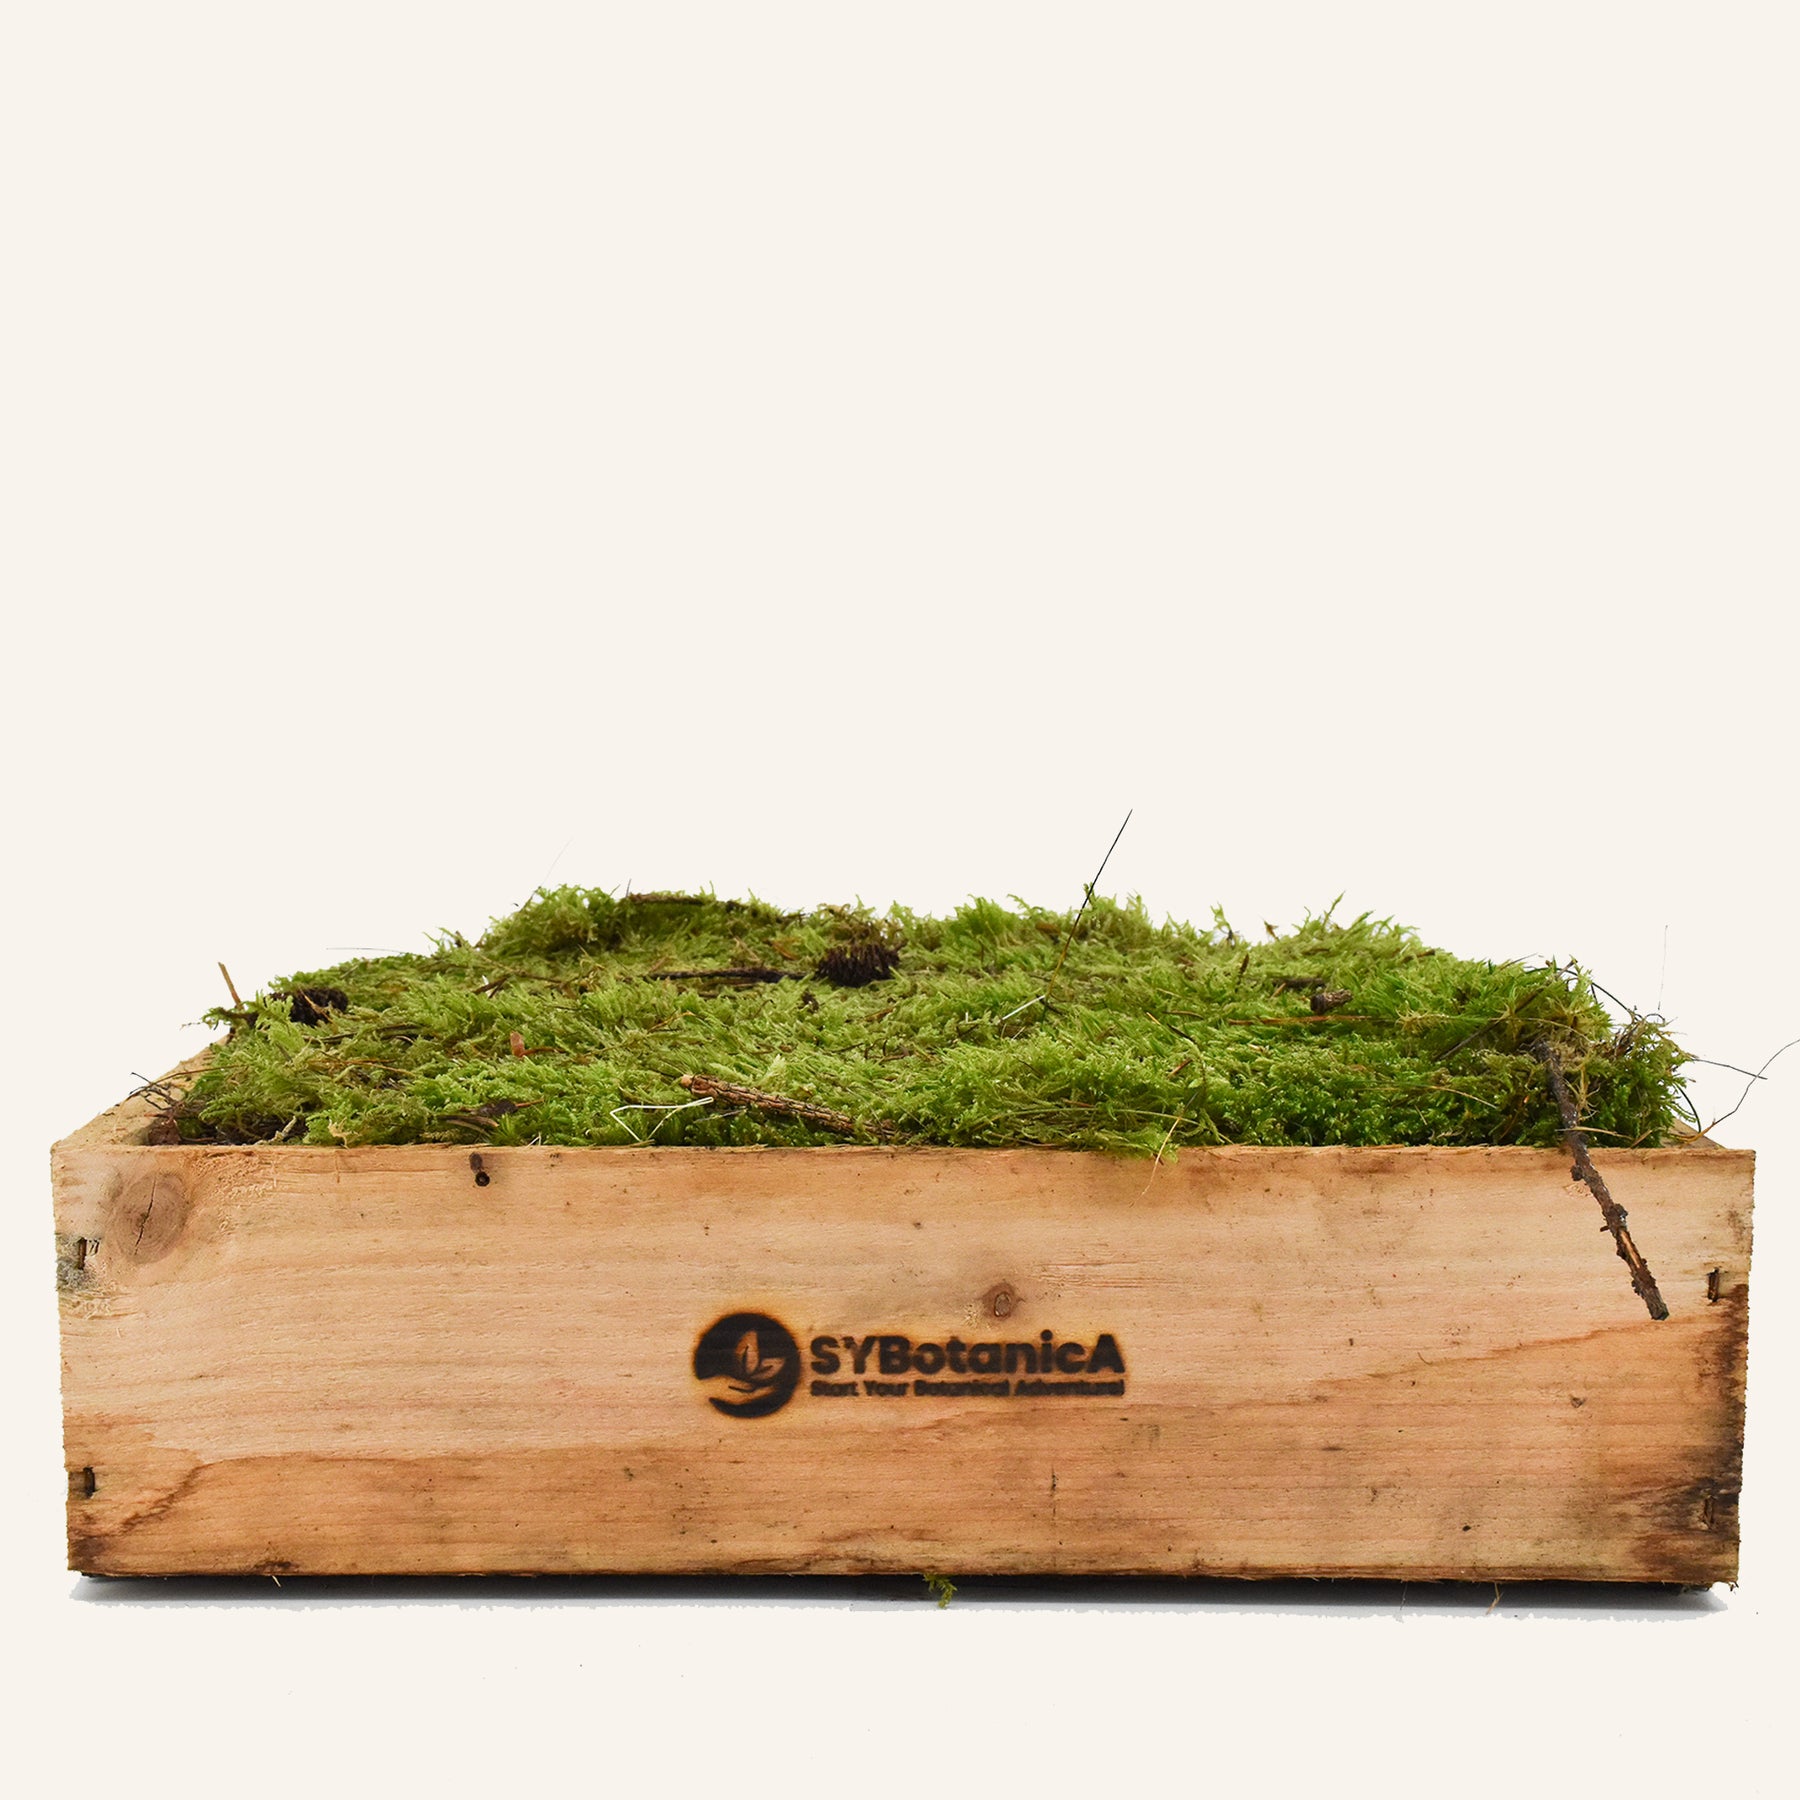 Live Feather & Sheet Moss for Terrariums, Vivariums, Bonsai, Reptile 1  Quart Bag